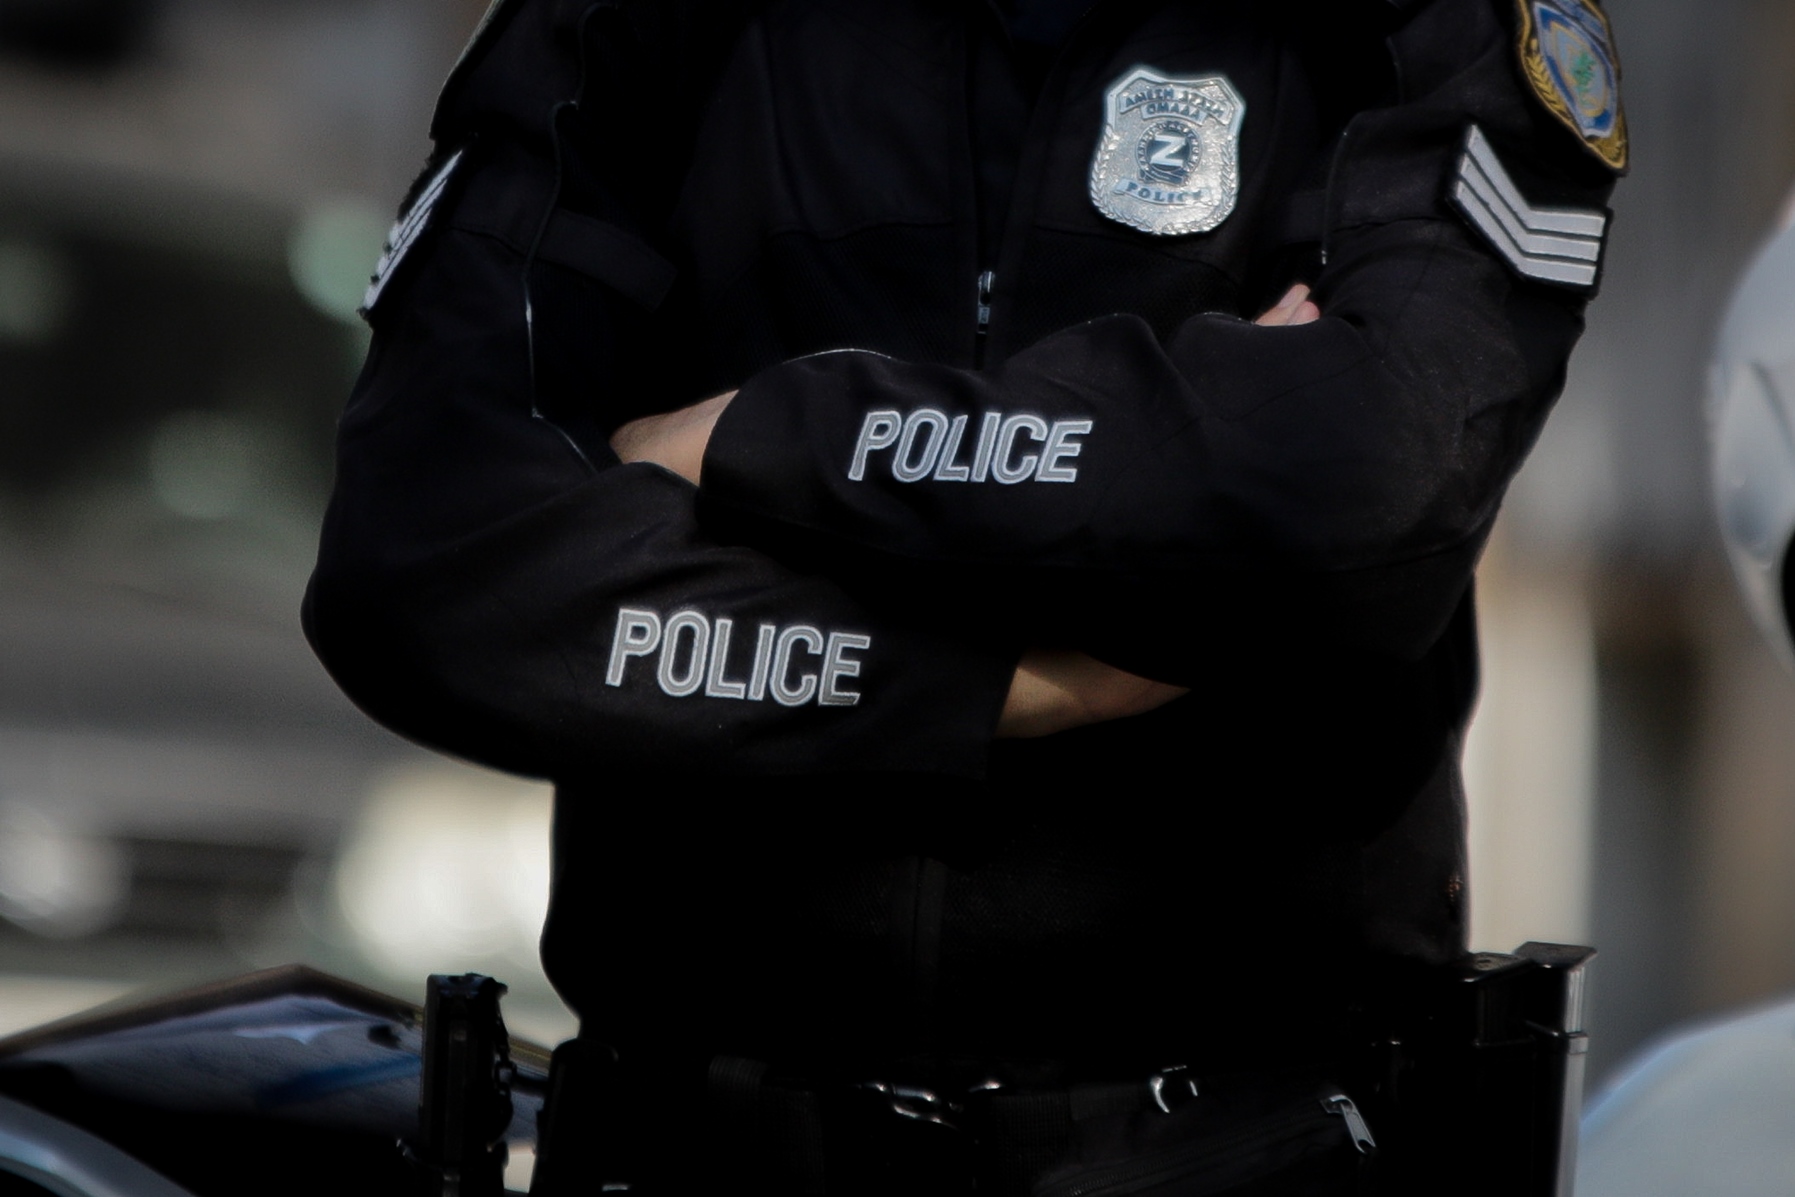 Μετάθεση φιλόζωου αστυνομικού: Μια υπόθεση που προκαλεί αντιδράσεις